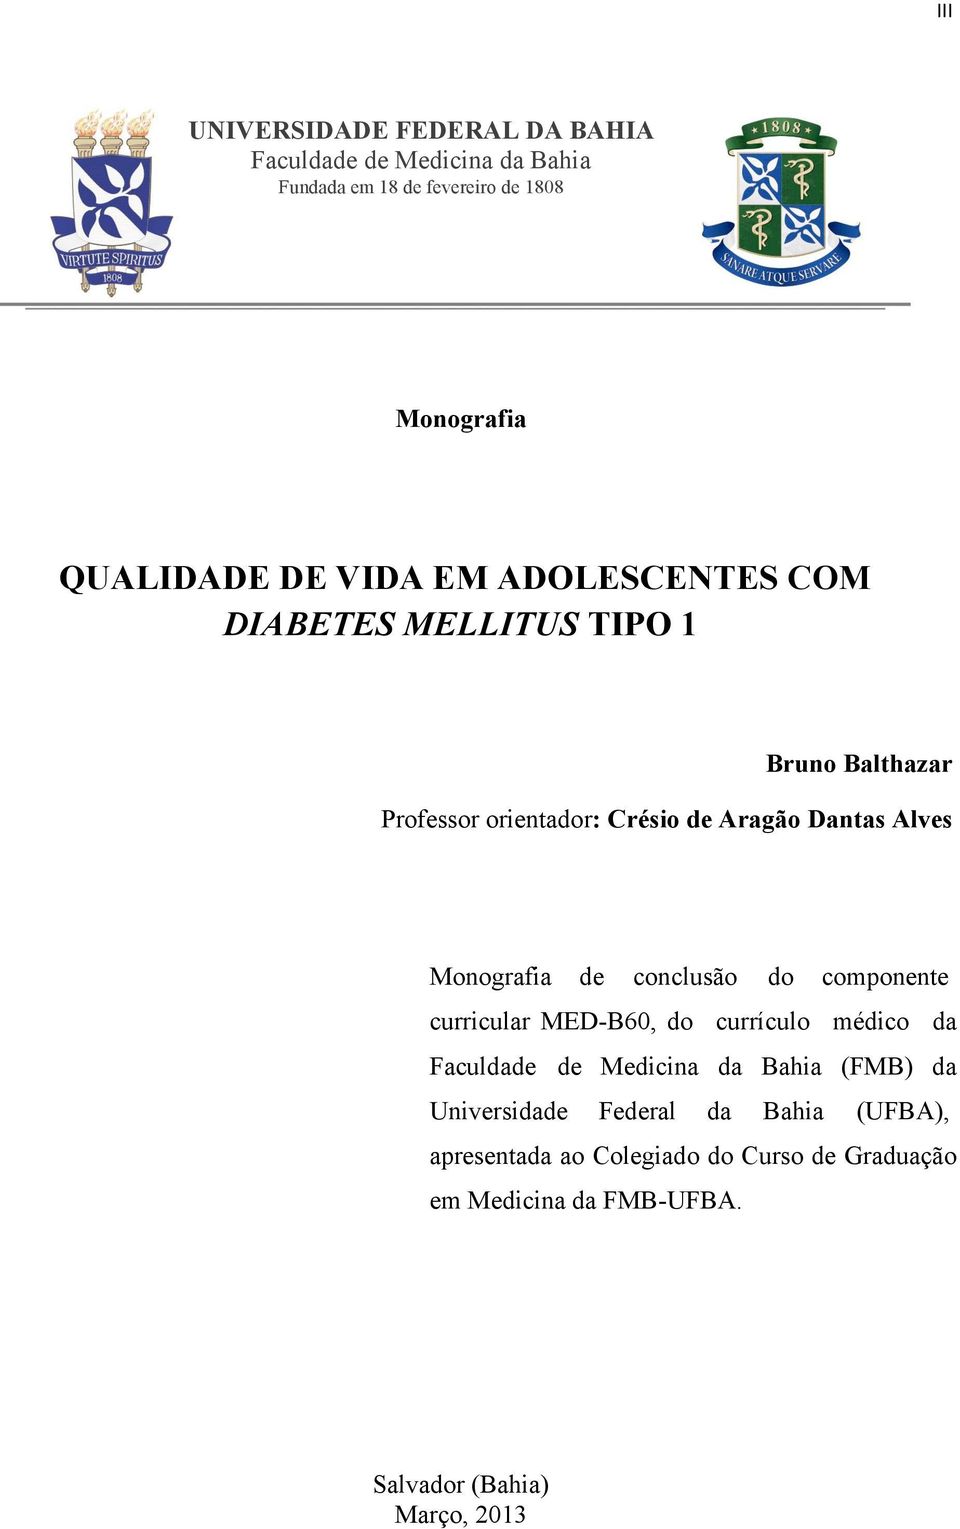 Monografia de conclusão do componente curricular MED-B60, do currículo médico da Faculdade de Medicina da Bahia (FMB) da